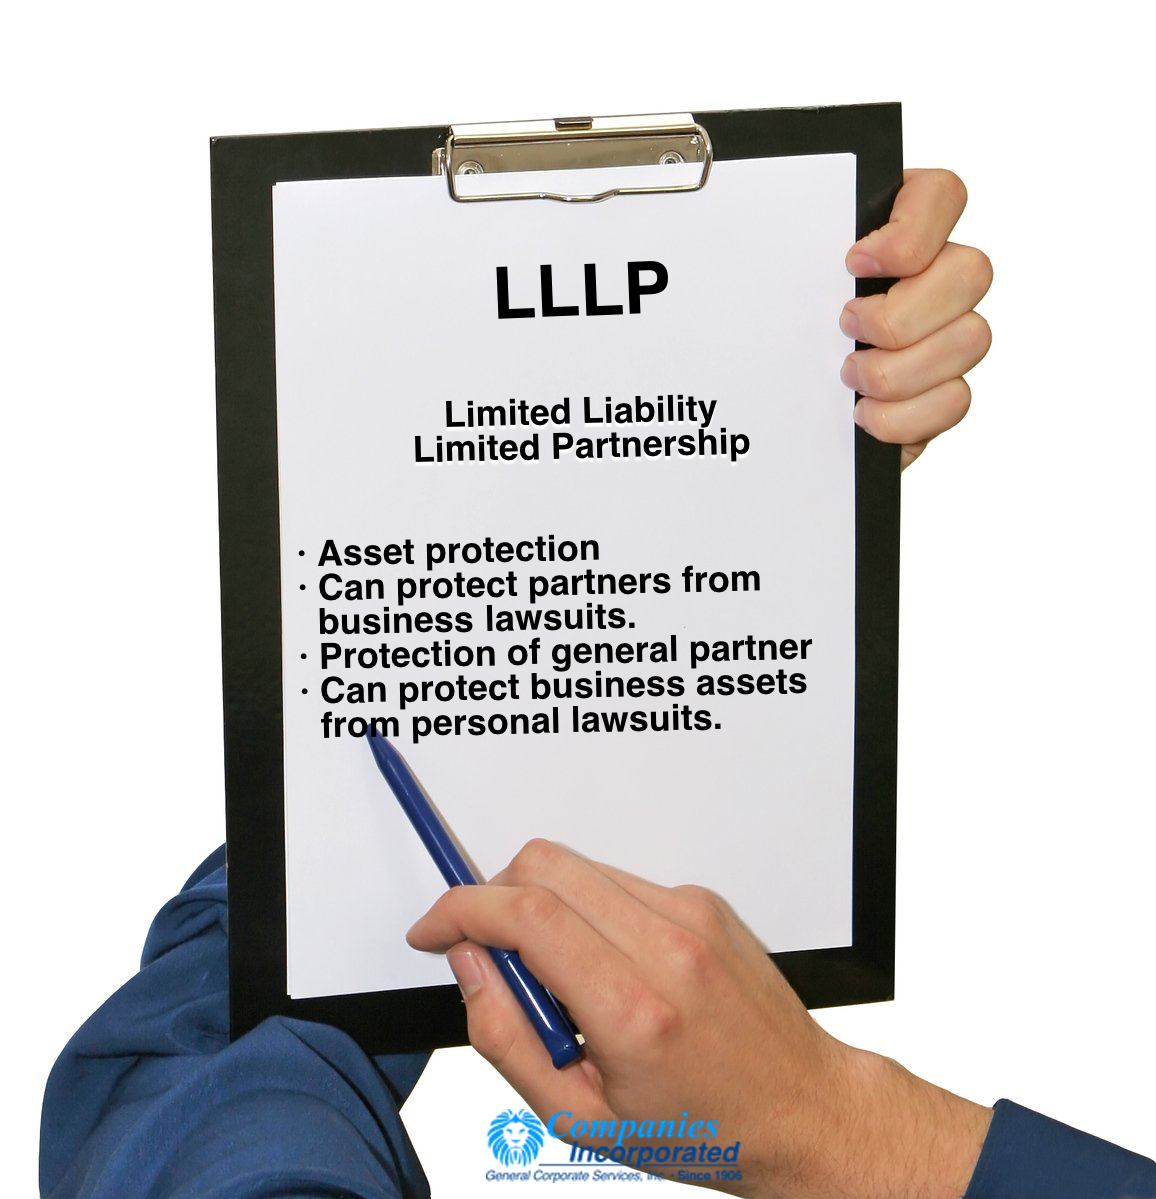 LLLP Benefits